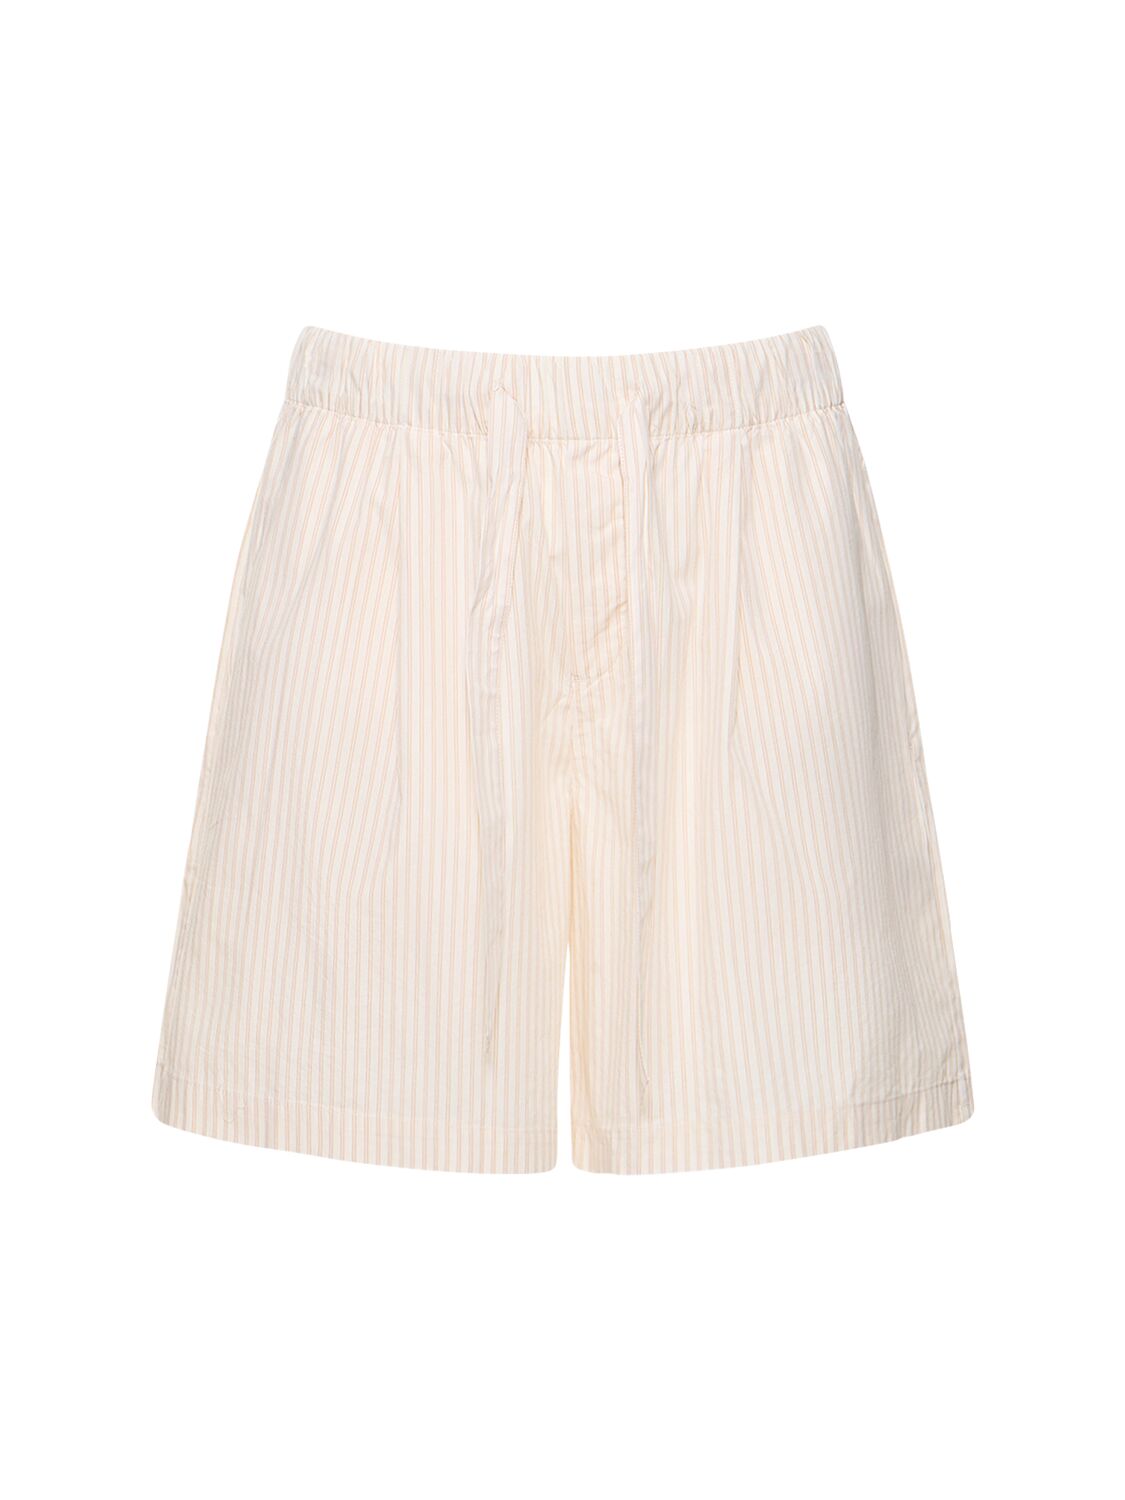 Birkenstock Tekla Side Pleat Shorts In White